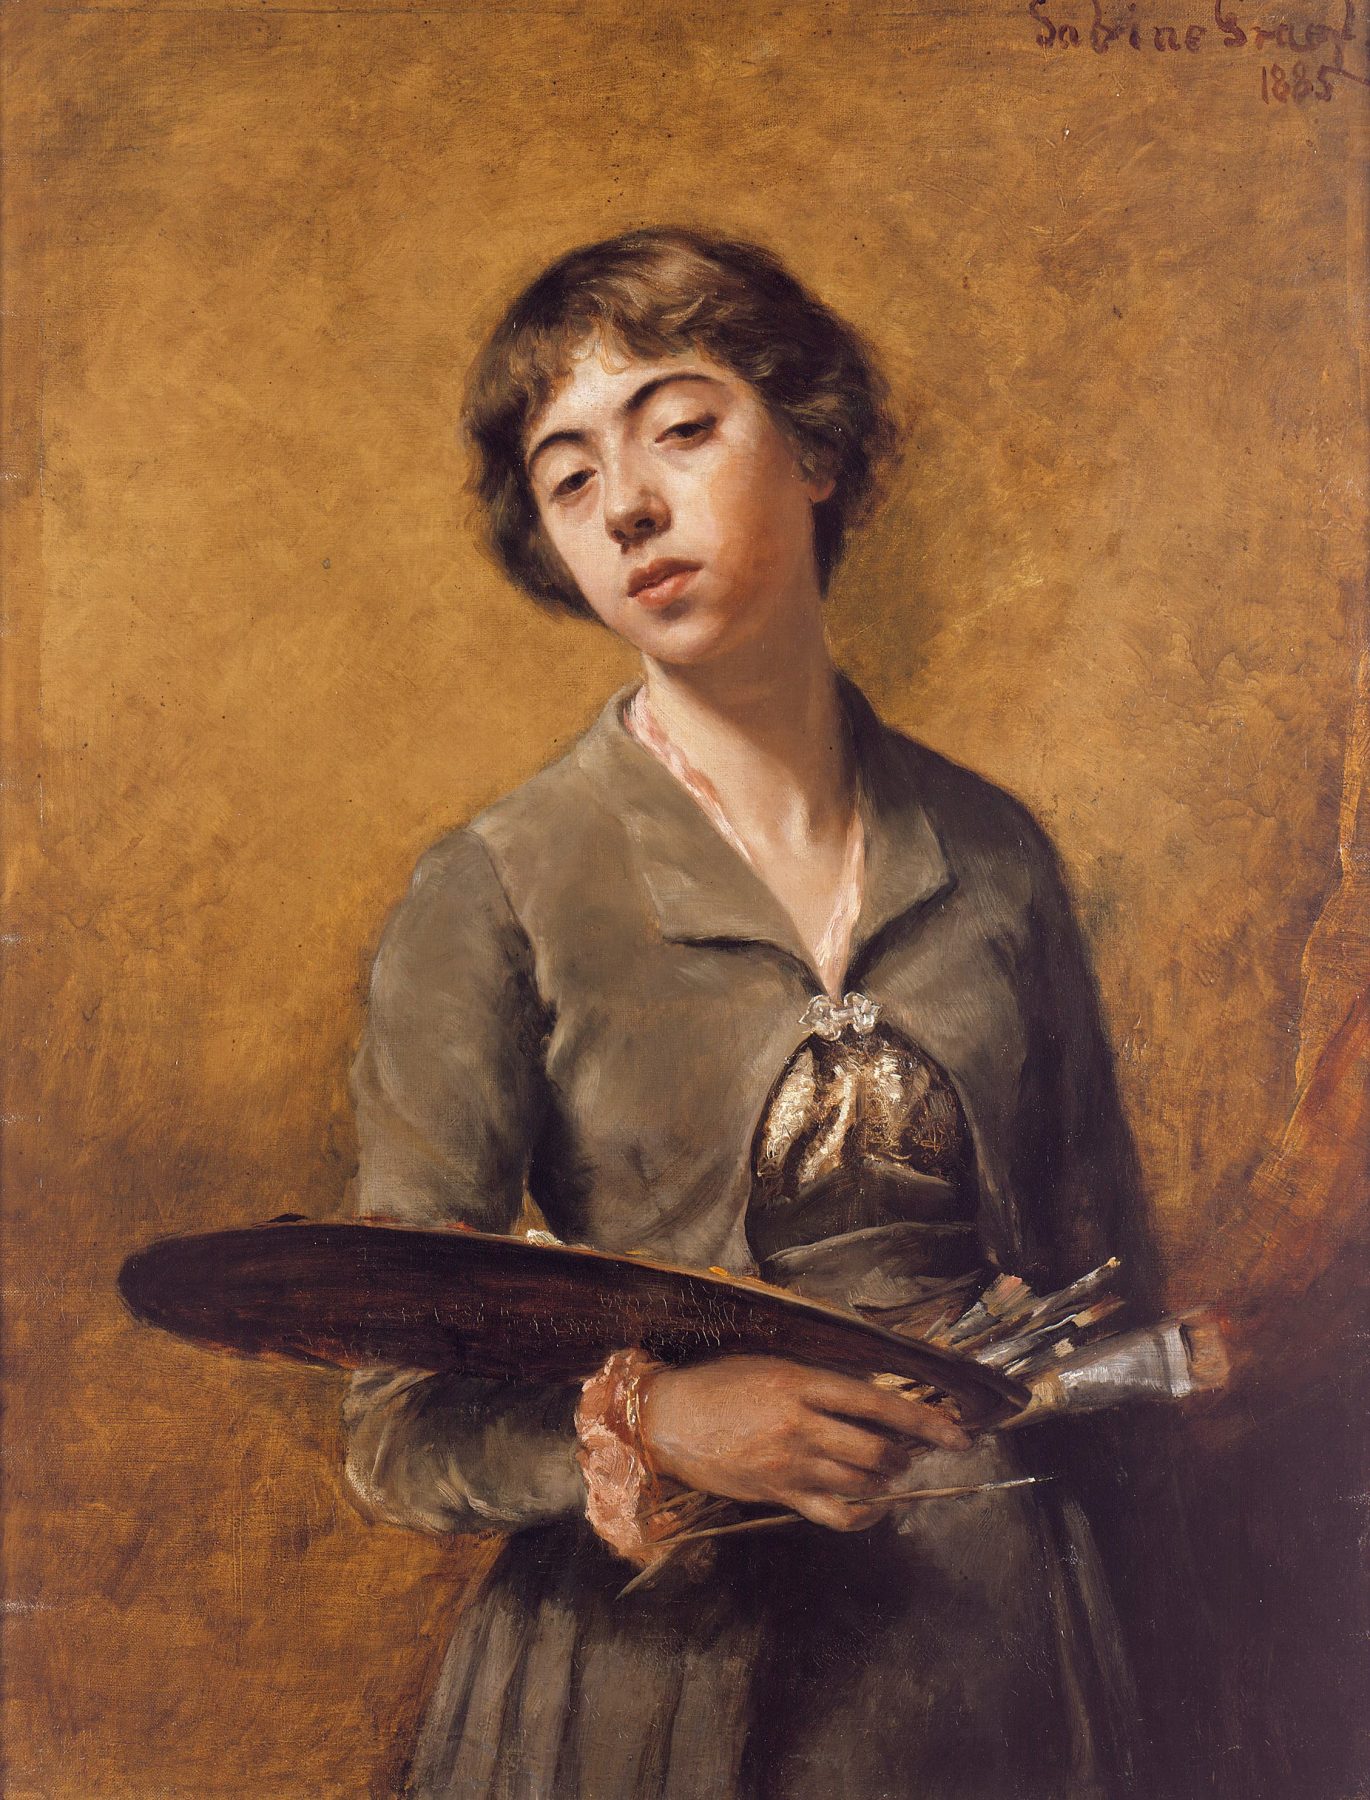 Selbstporträt der Malerin Sabine Lepsius, die eine Staffelei in der eine und einen Pinsel in der anderen Hand hält. Sie trägt ein Kleid und steht vor einem braun-goldenem Hintergrund.